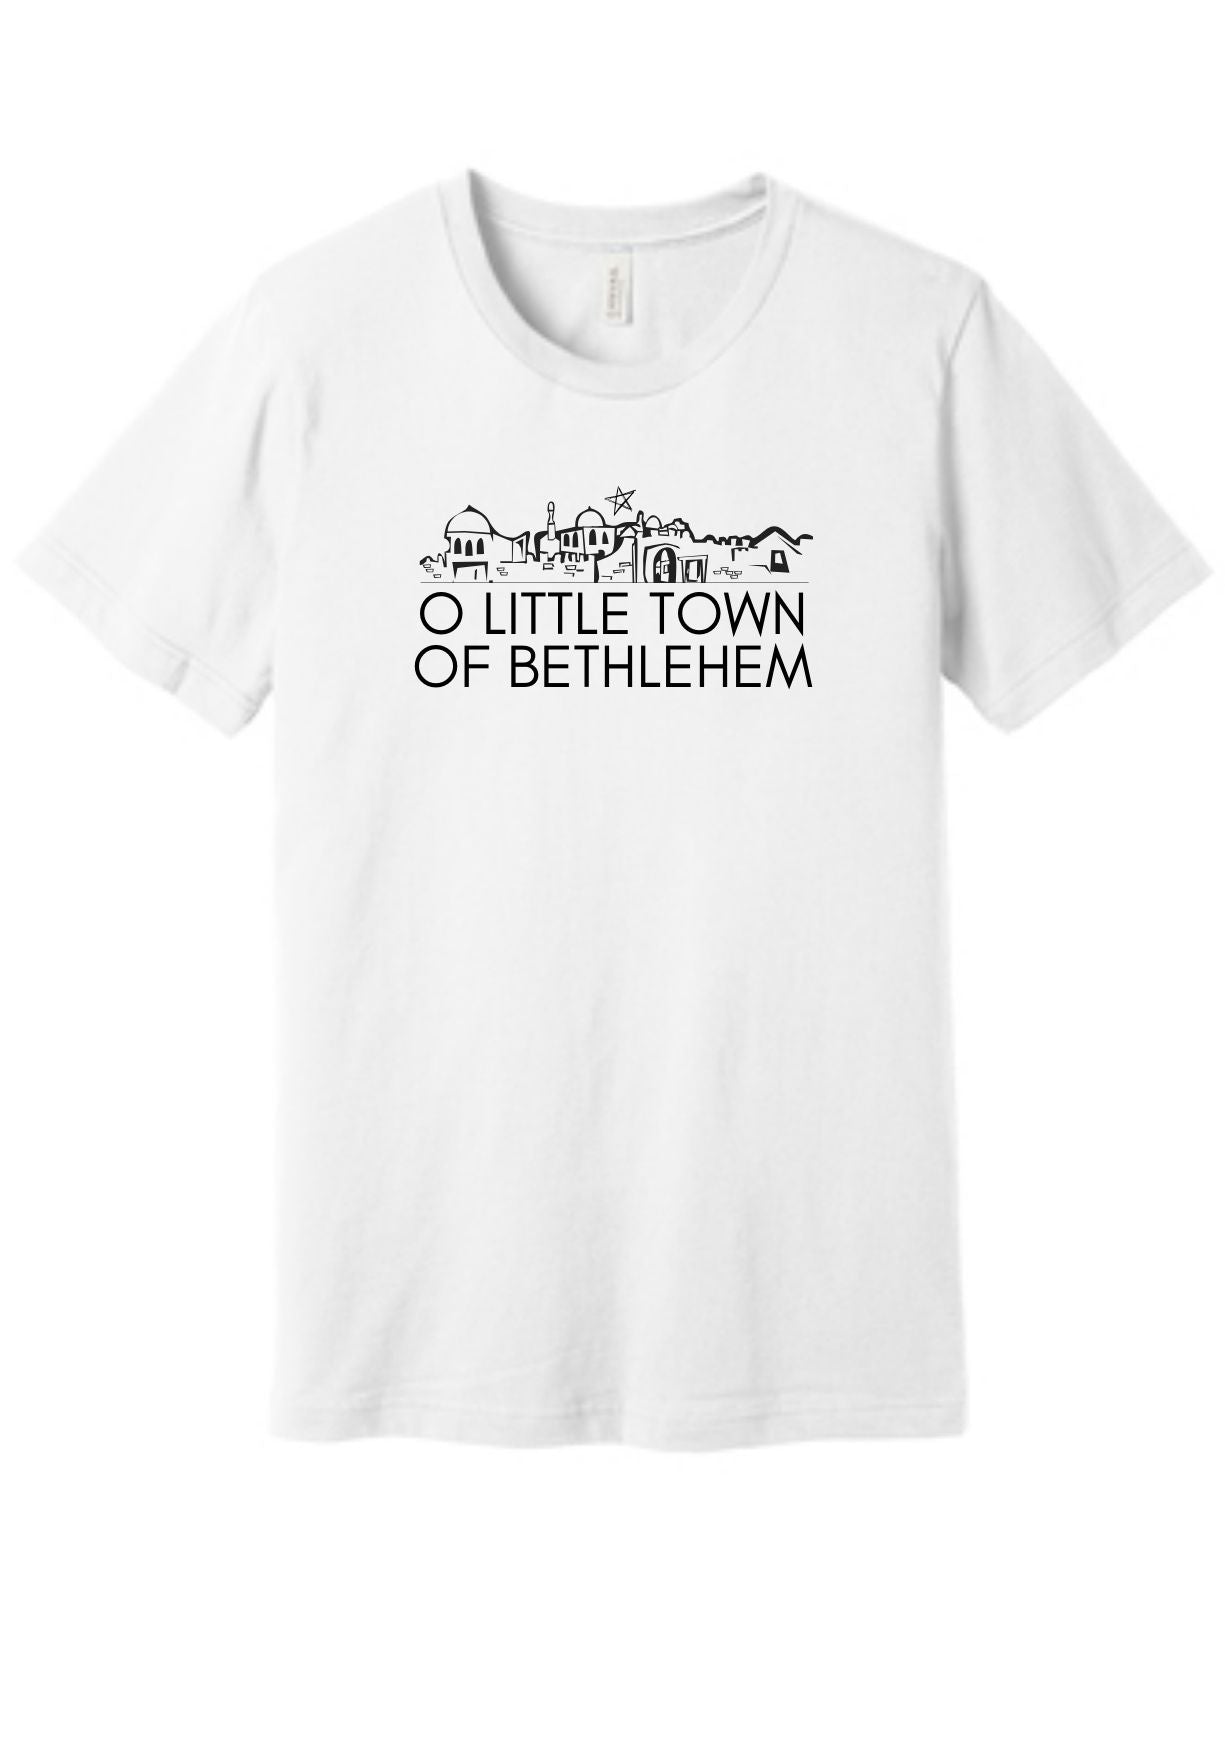 Christian Christmas T-shirt "O Little Town of Bethlehem"